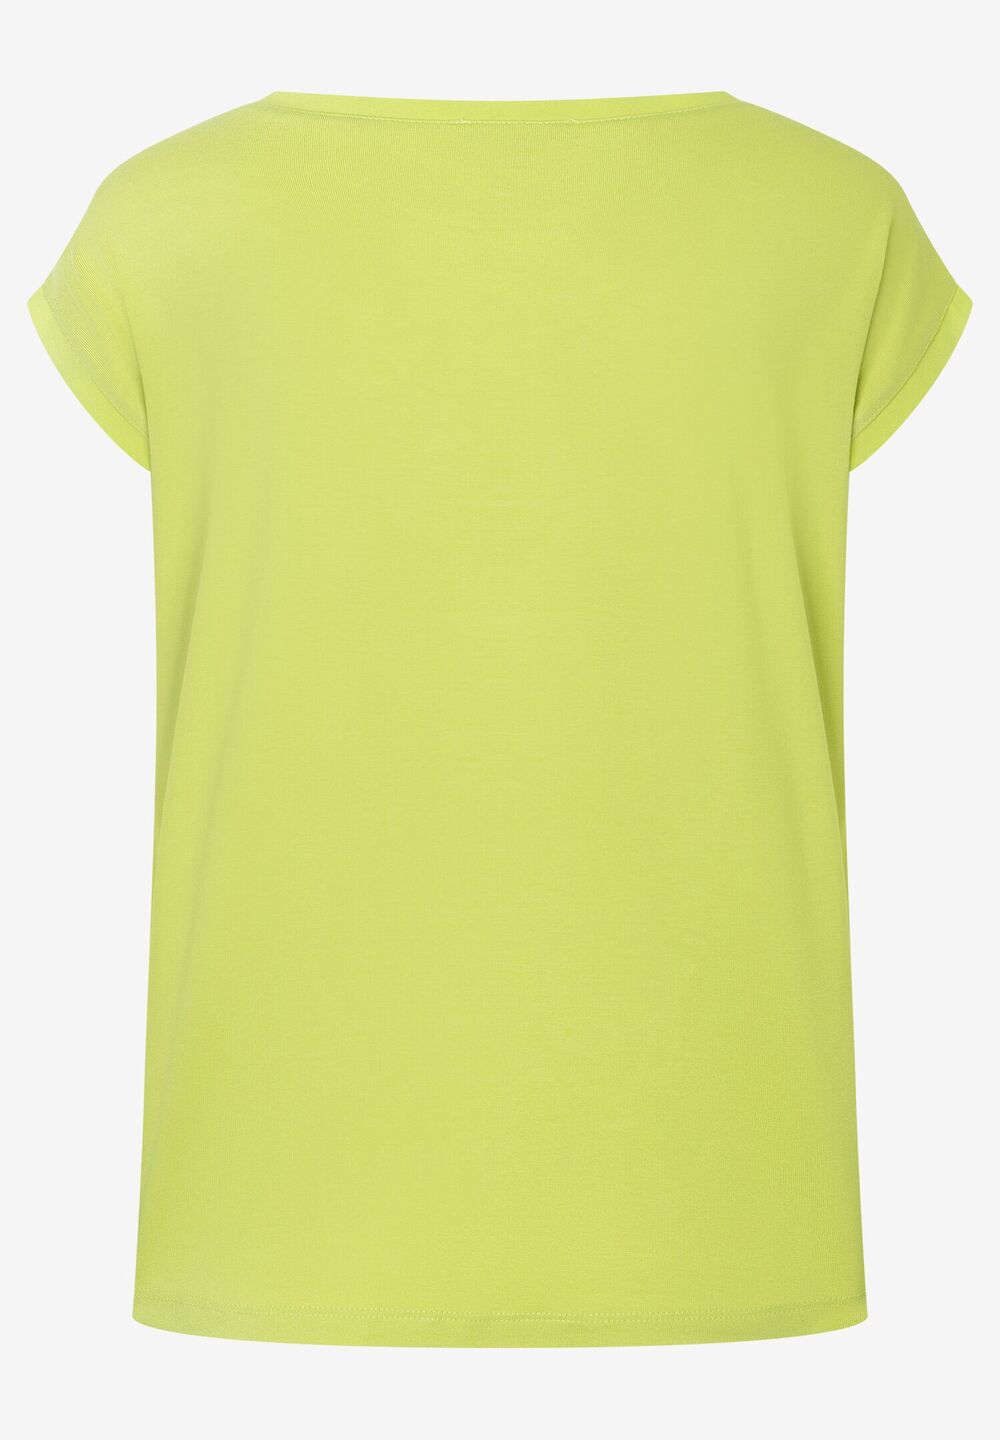 T-Shirt mit Chiffonkante, lime green, Sommer-Kollektion, gelbDetailansicht 2